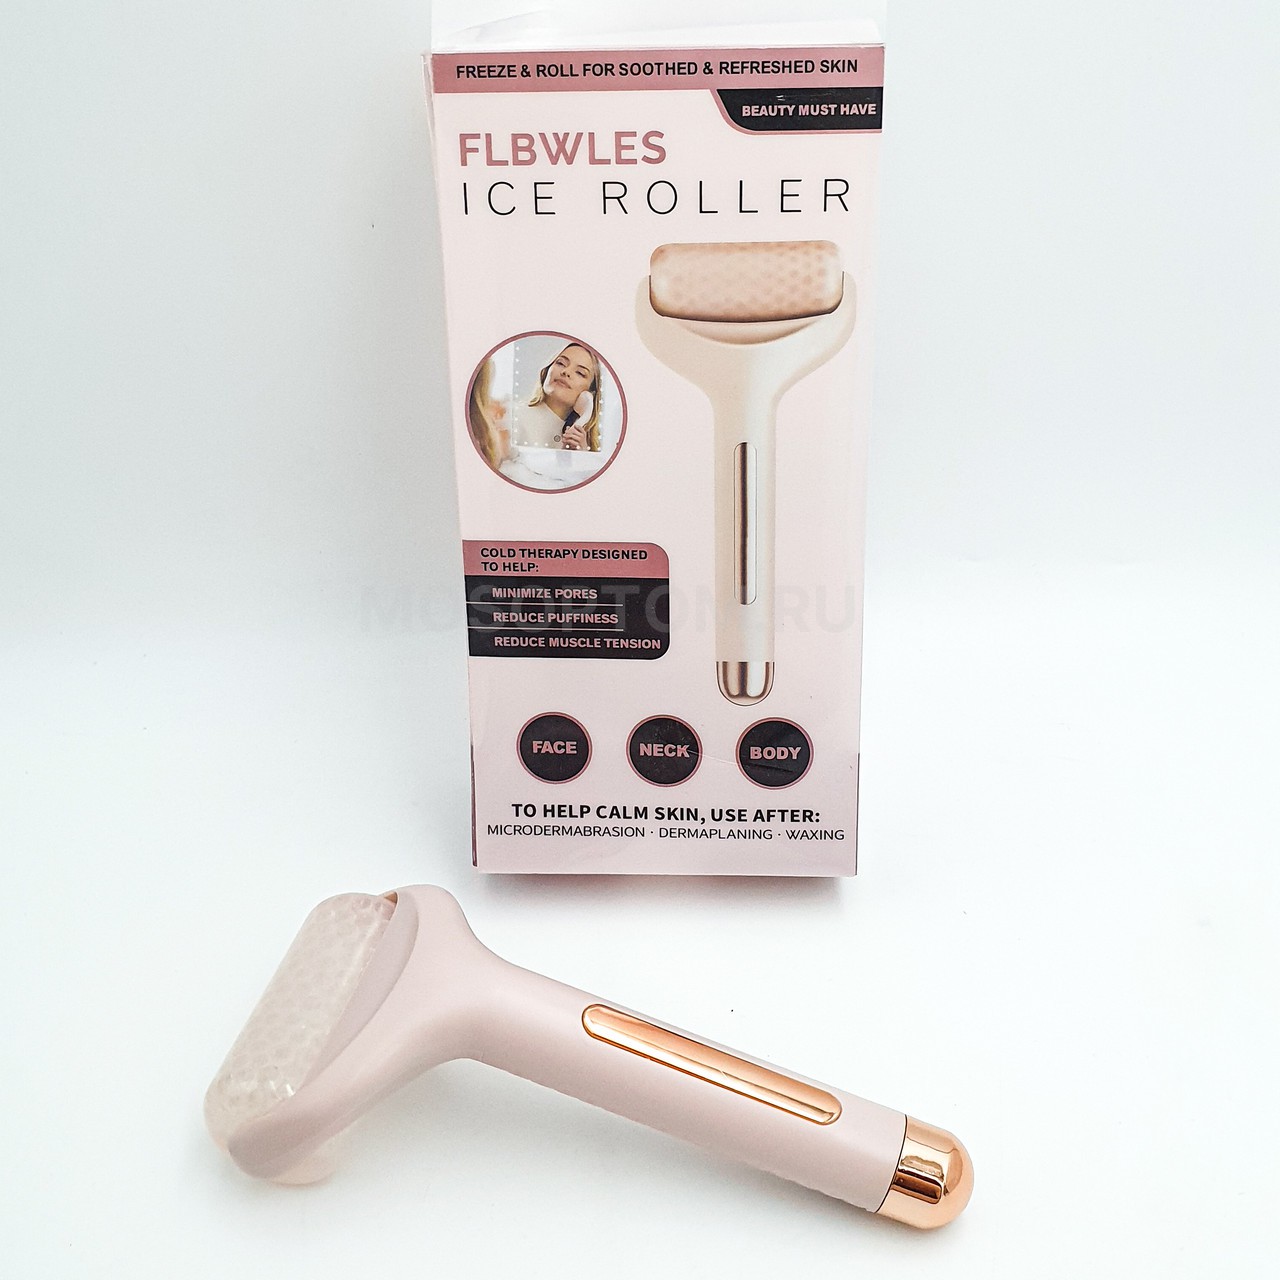 Охлаждающий ролик массажер для лица и тела Flbwles Ice Roller оптом - Фото №4